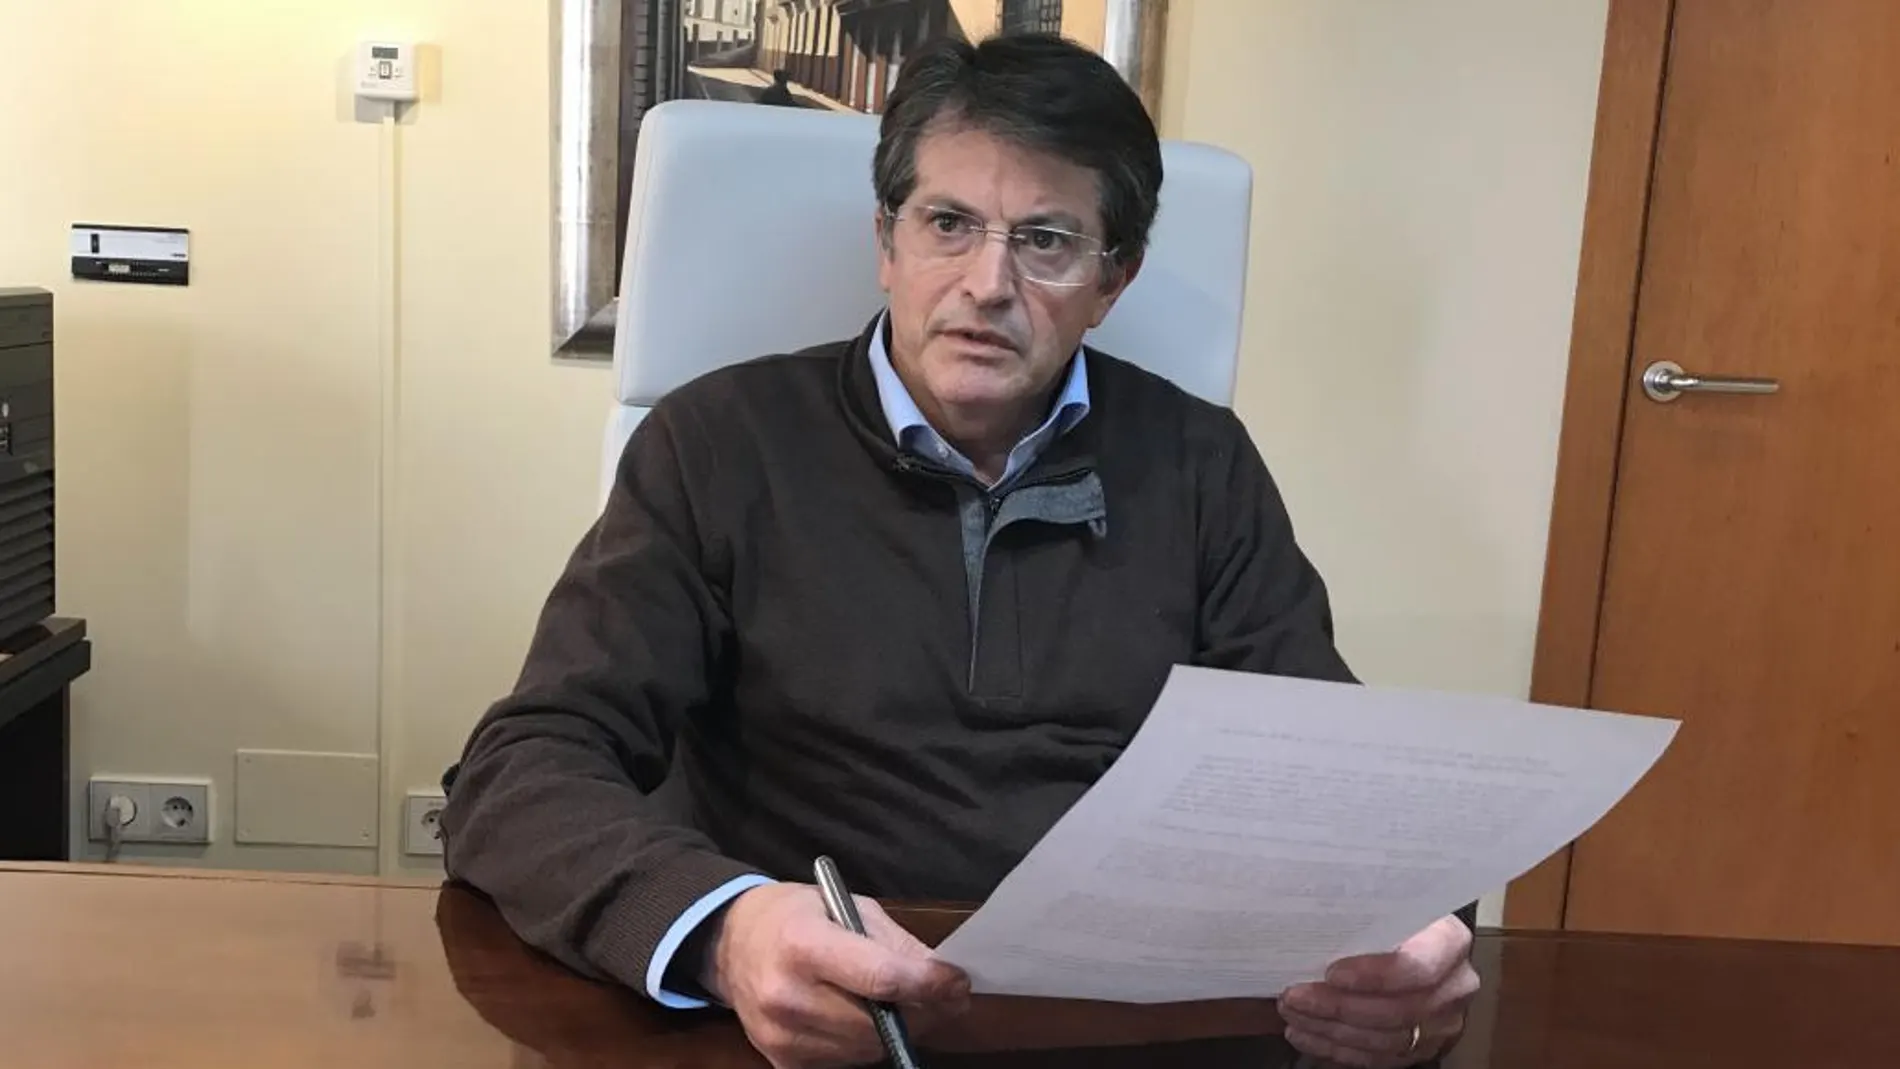 El alcalde de Lorca, Francisco Jódar, en su despacho durante un momento de la entrevista